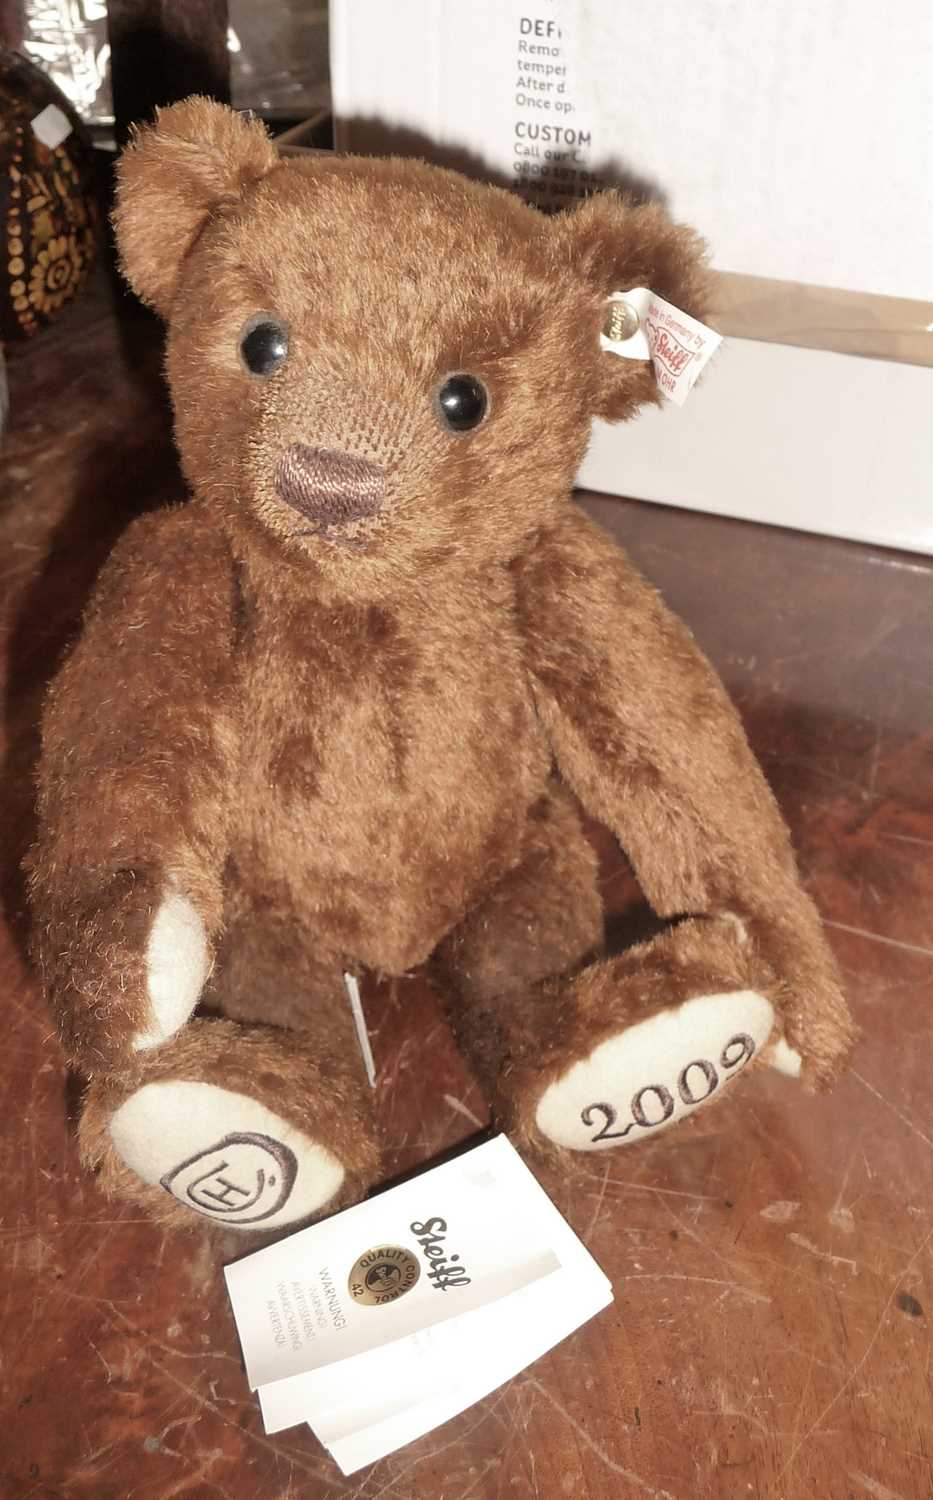 2009 Steiff Hotel Chocolat teddy bear called George, limited edition